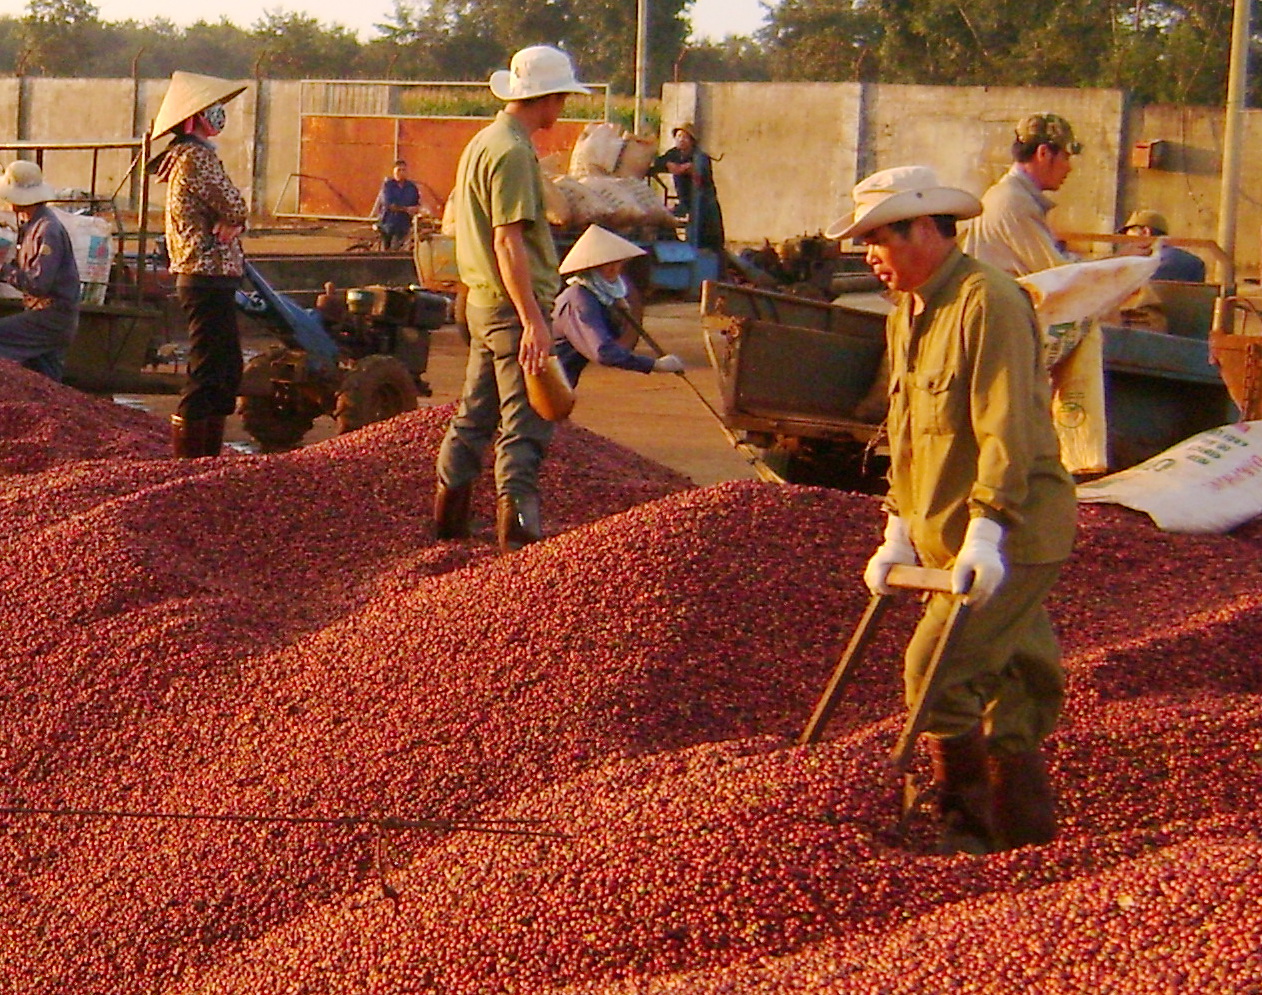 lượng cà phê xuất khẩu 11 tháng năm 2017 đạt 1,267 triệu tấn,  trị giá 2,897 tỷ USD.